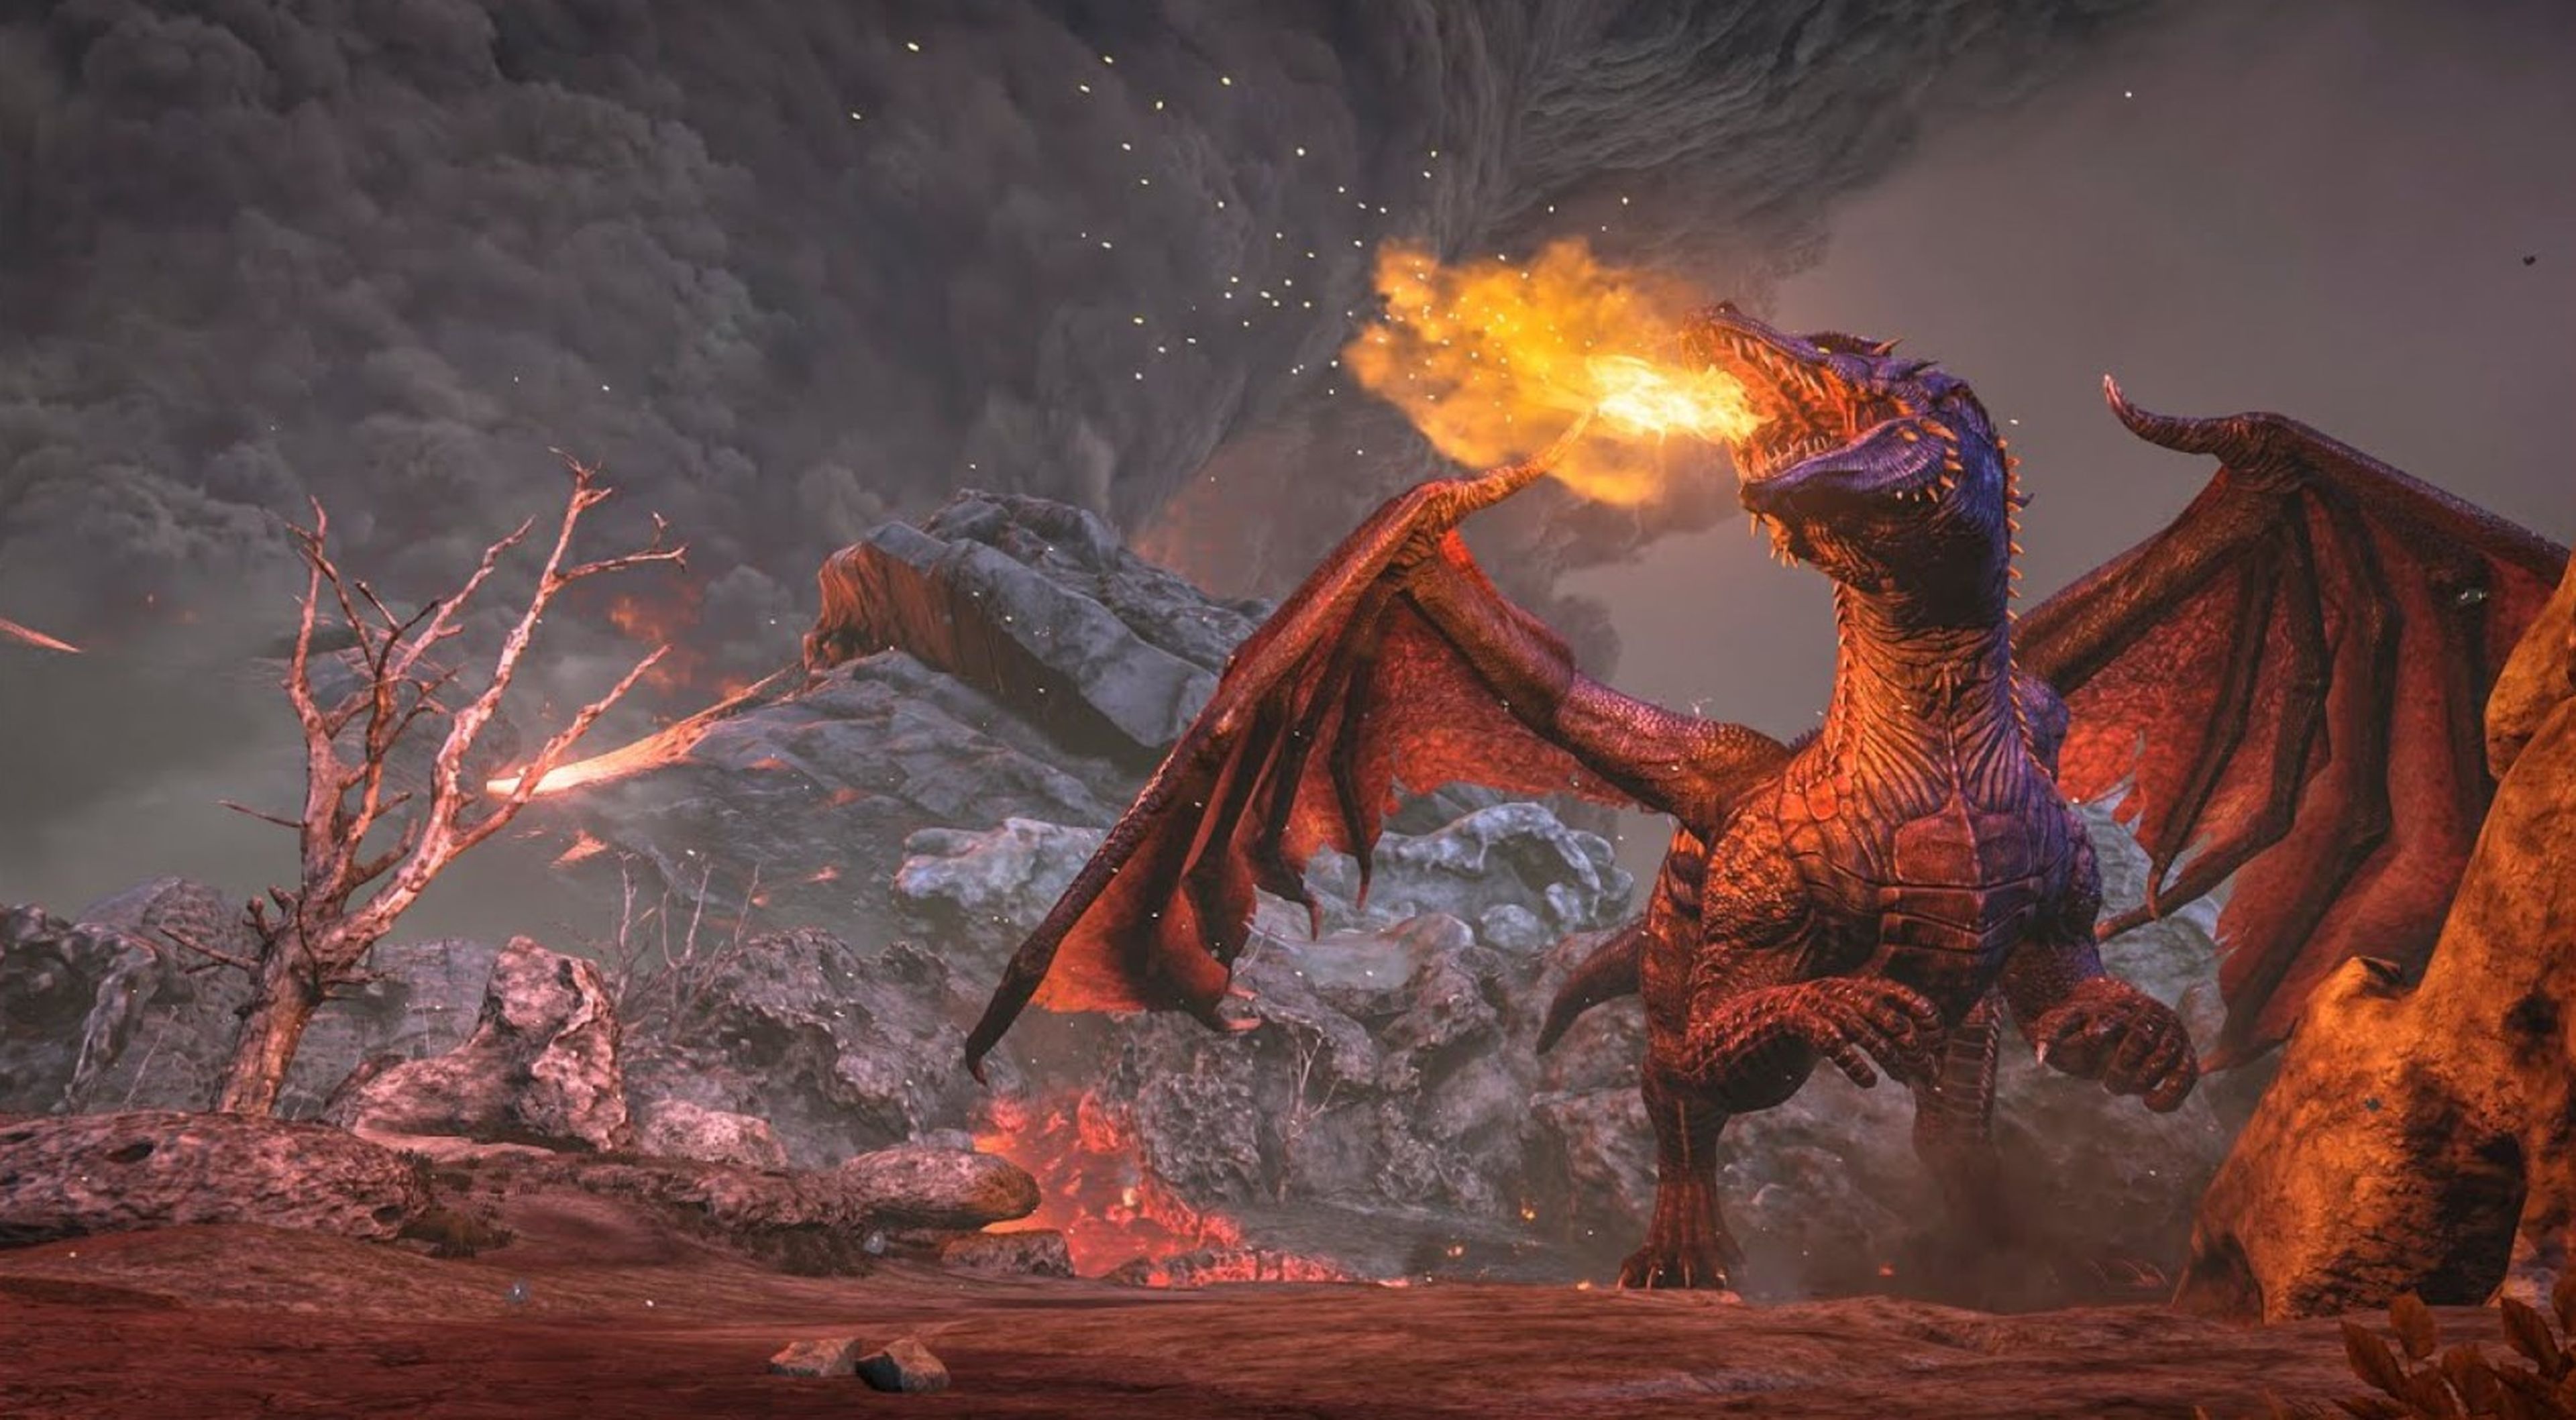 Los 15 mejores videojuegos con dragones